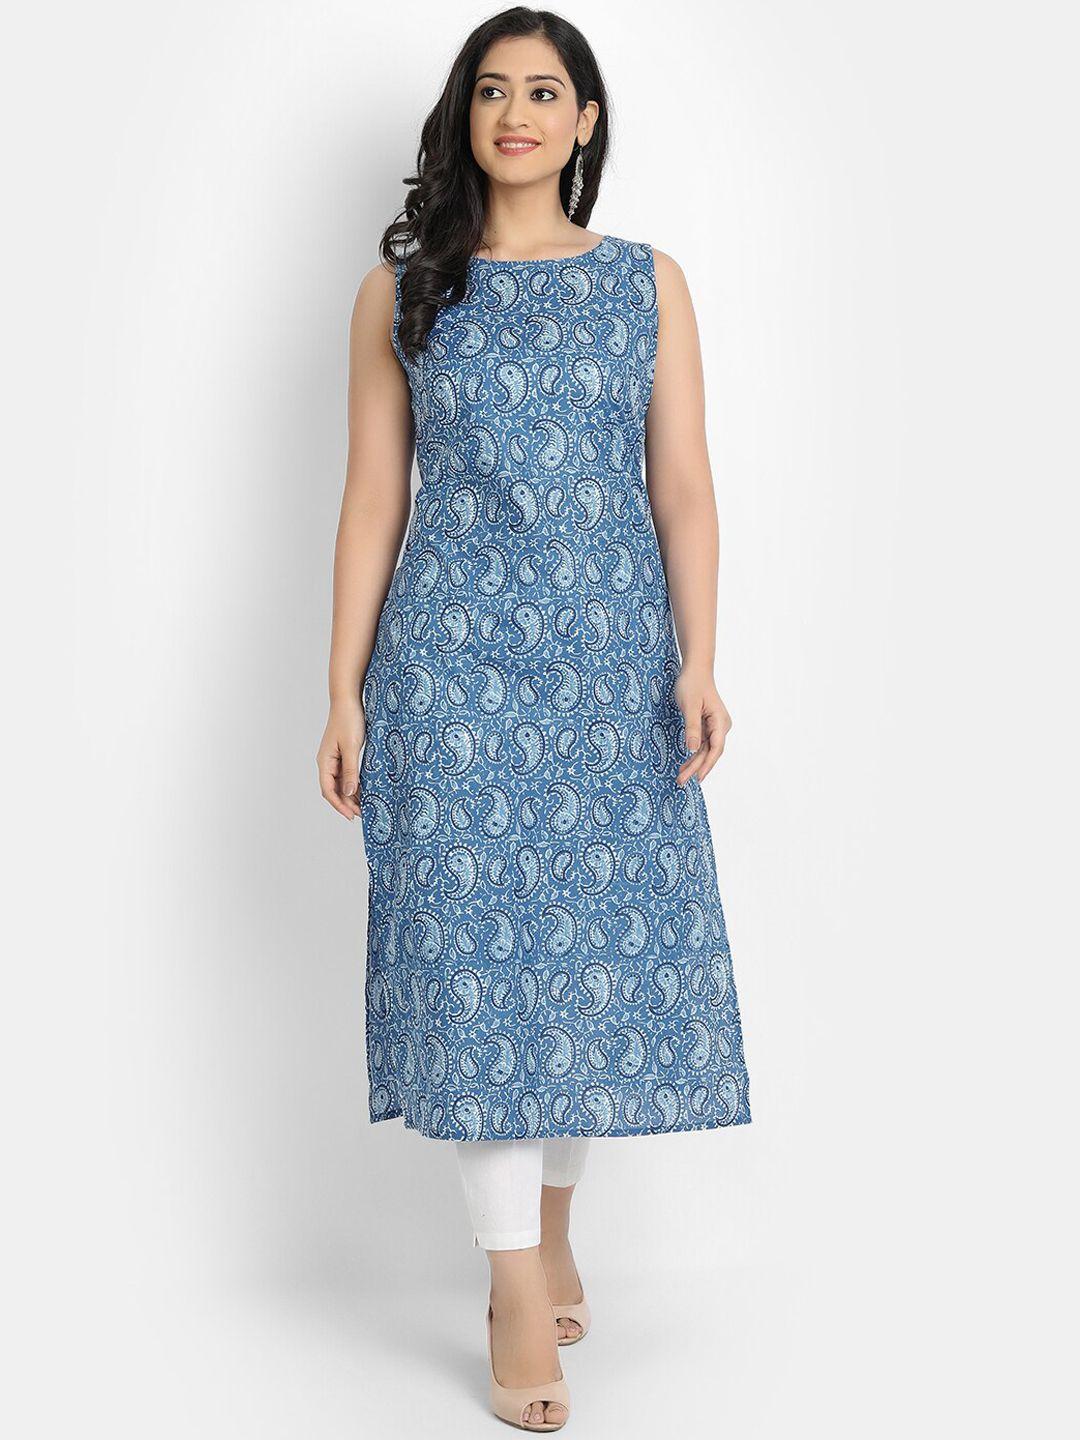 fabglobal women blue & white ethnic motif printed kurta